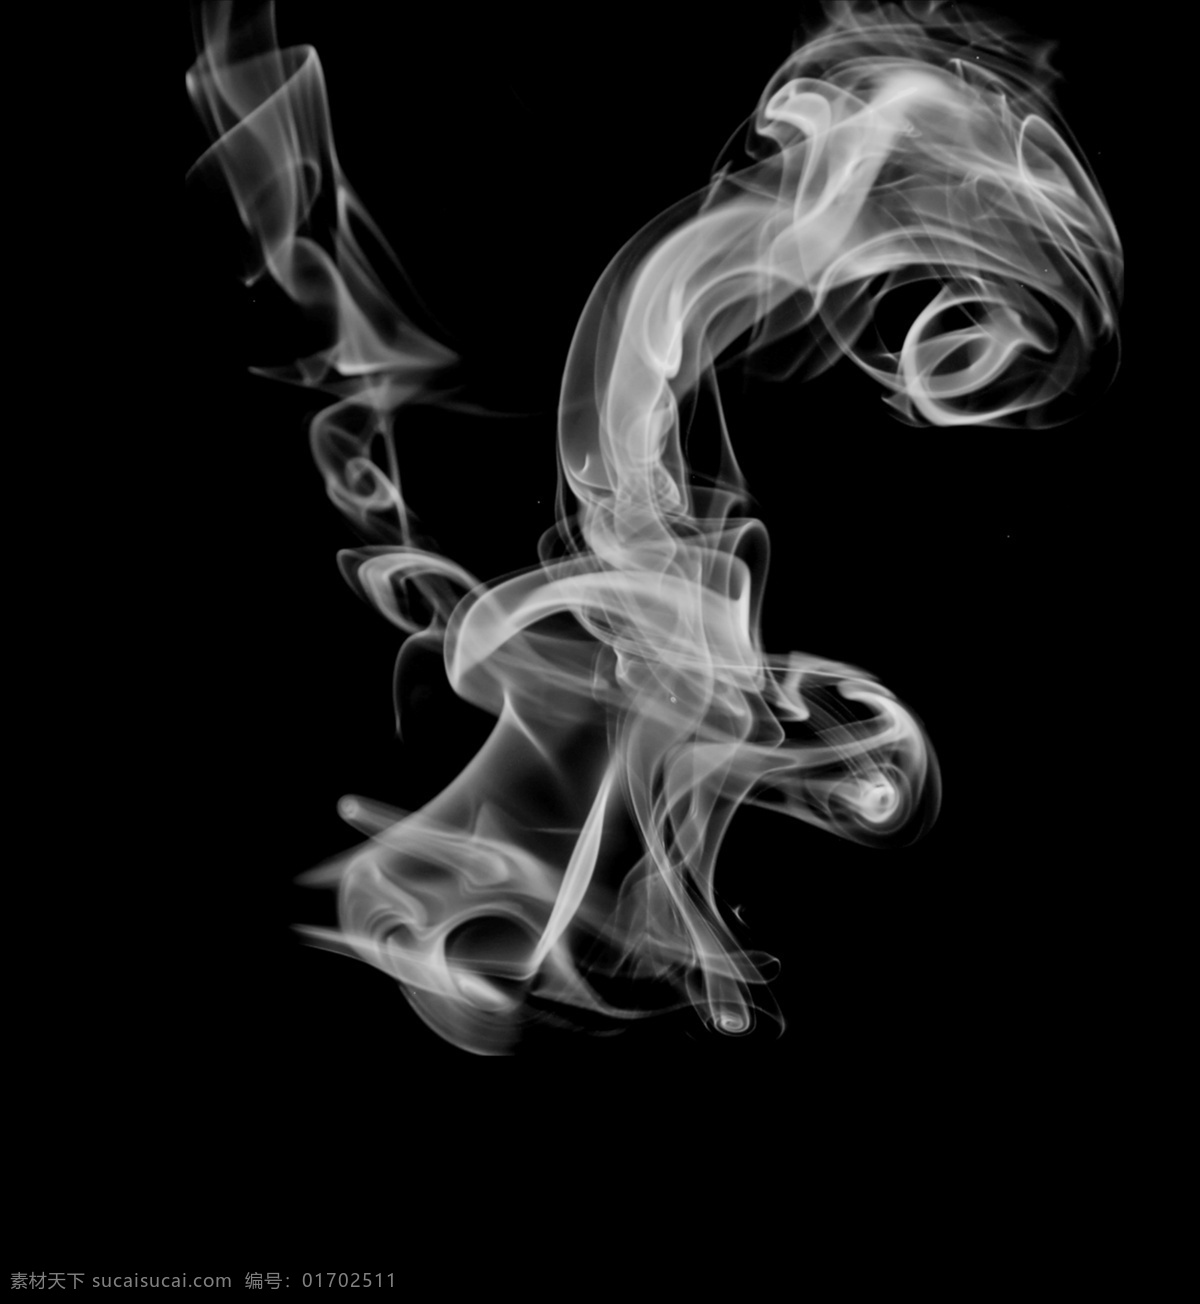 烟雾图片 烟雾 烟雾素材 烟雾背景 透明烟雾 白色烟雾 基本素材